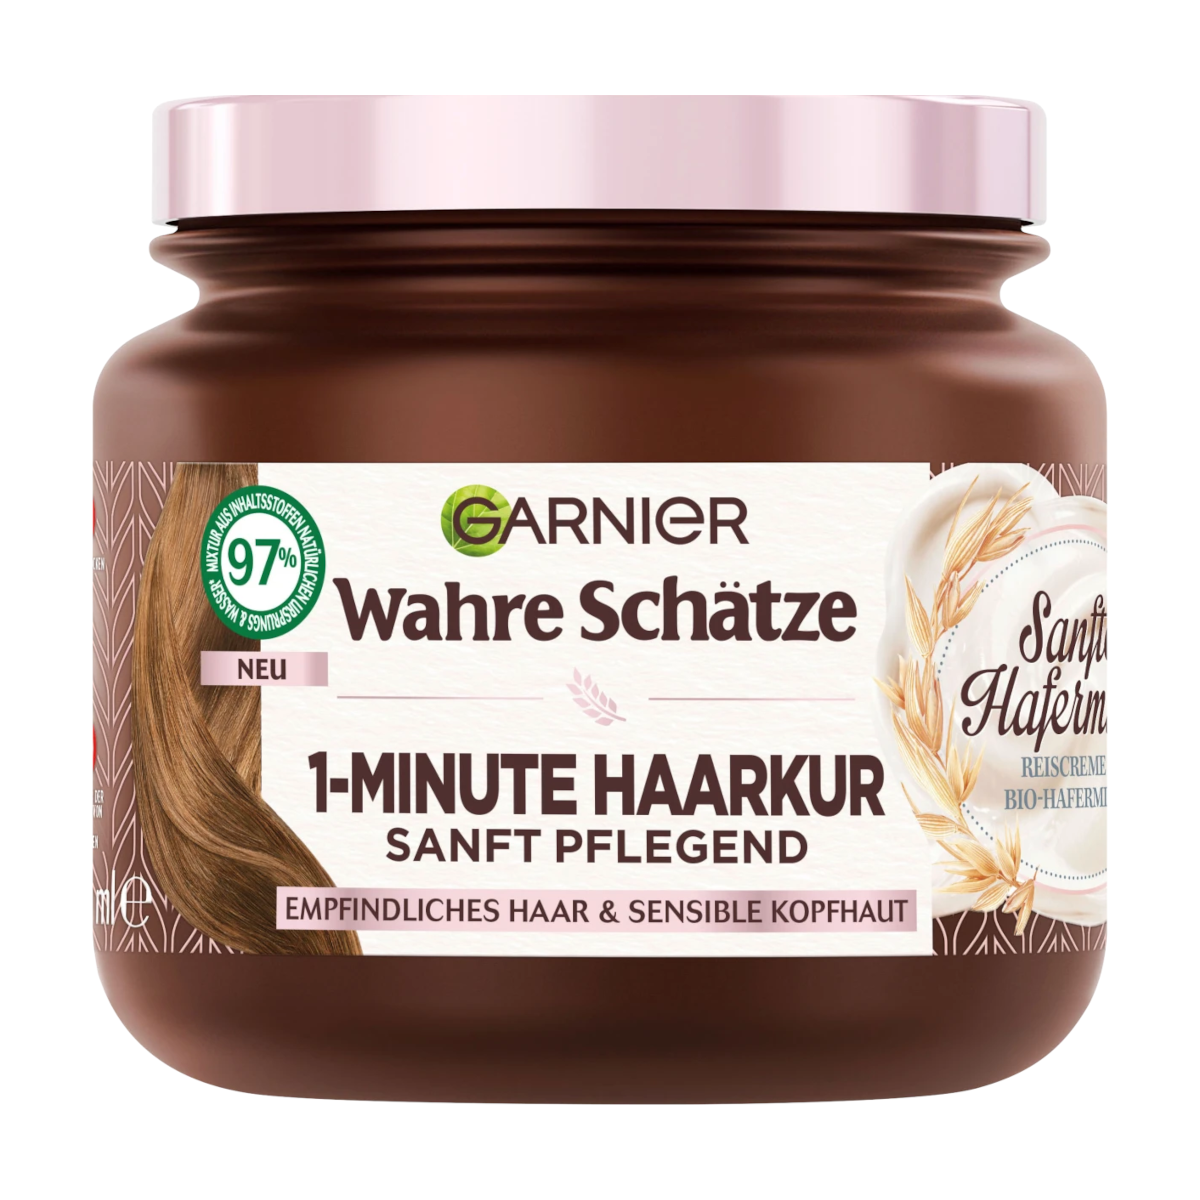 Garnier Wahre Schätze Haarkur 1-Minute Sanfte Hafermilch, 340 ml